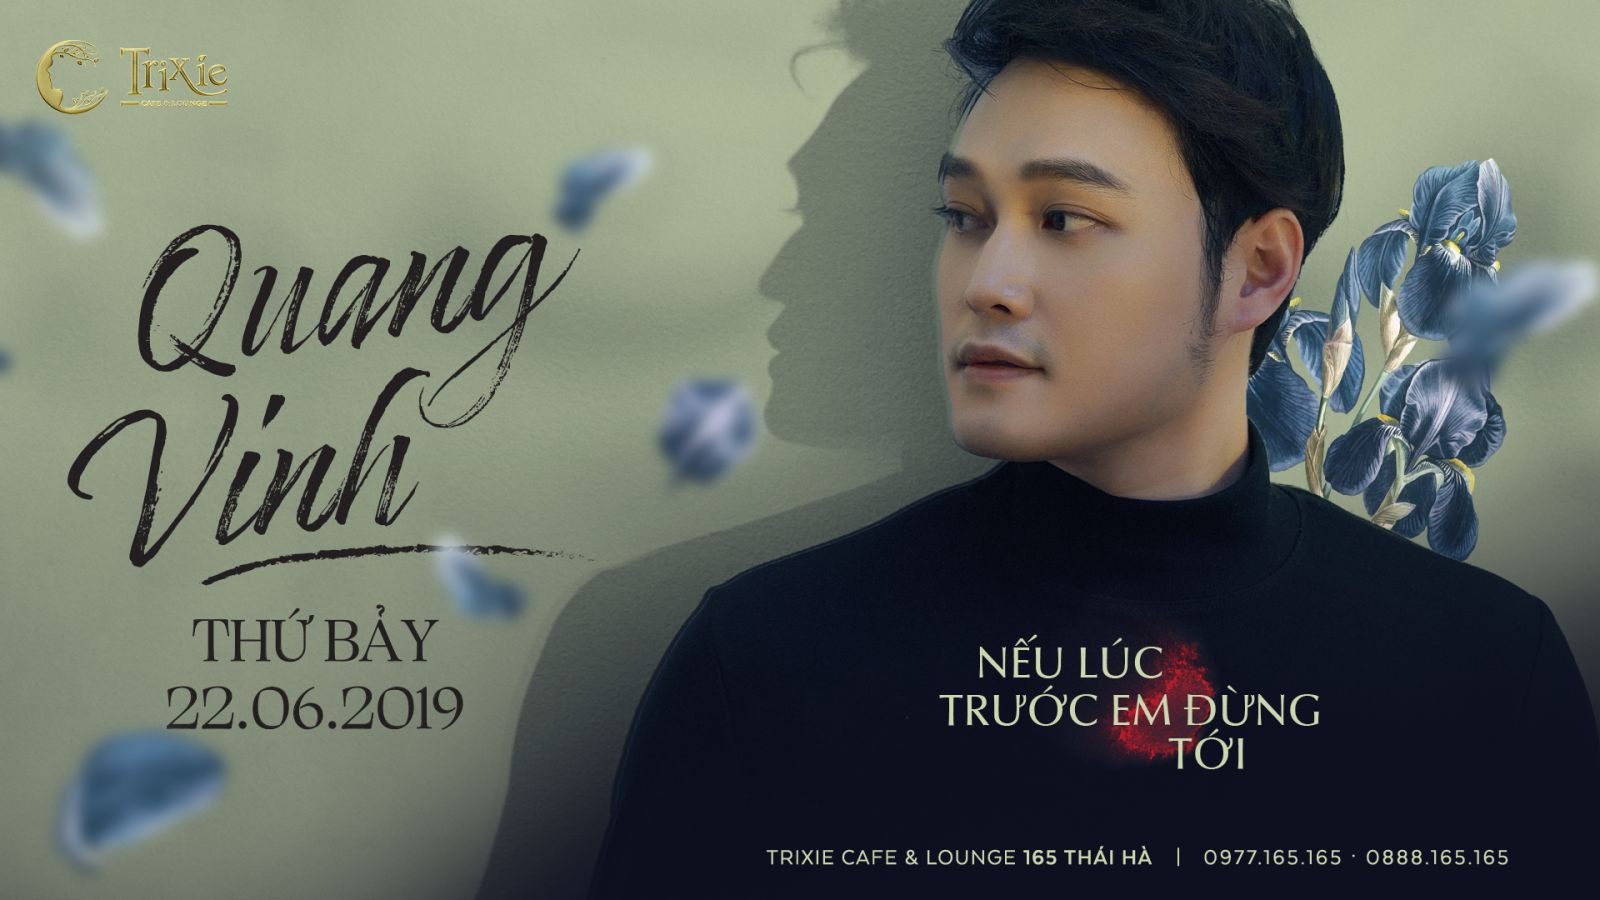 Minishow Quang Vinh  ngày 22.06.2019 tại Hà Nội